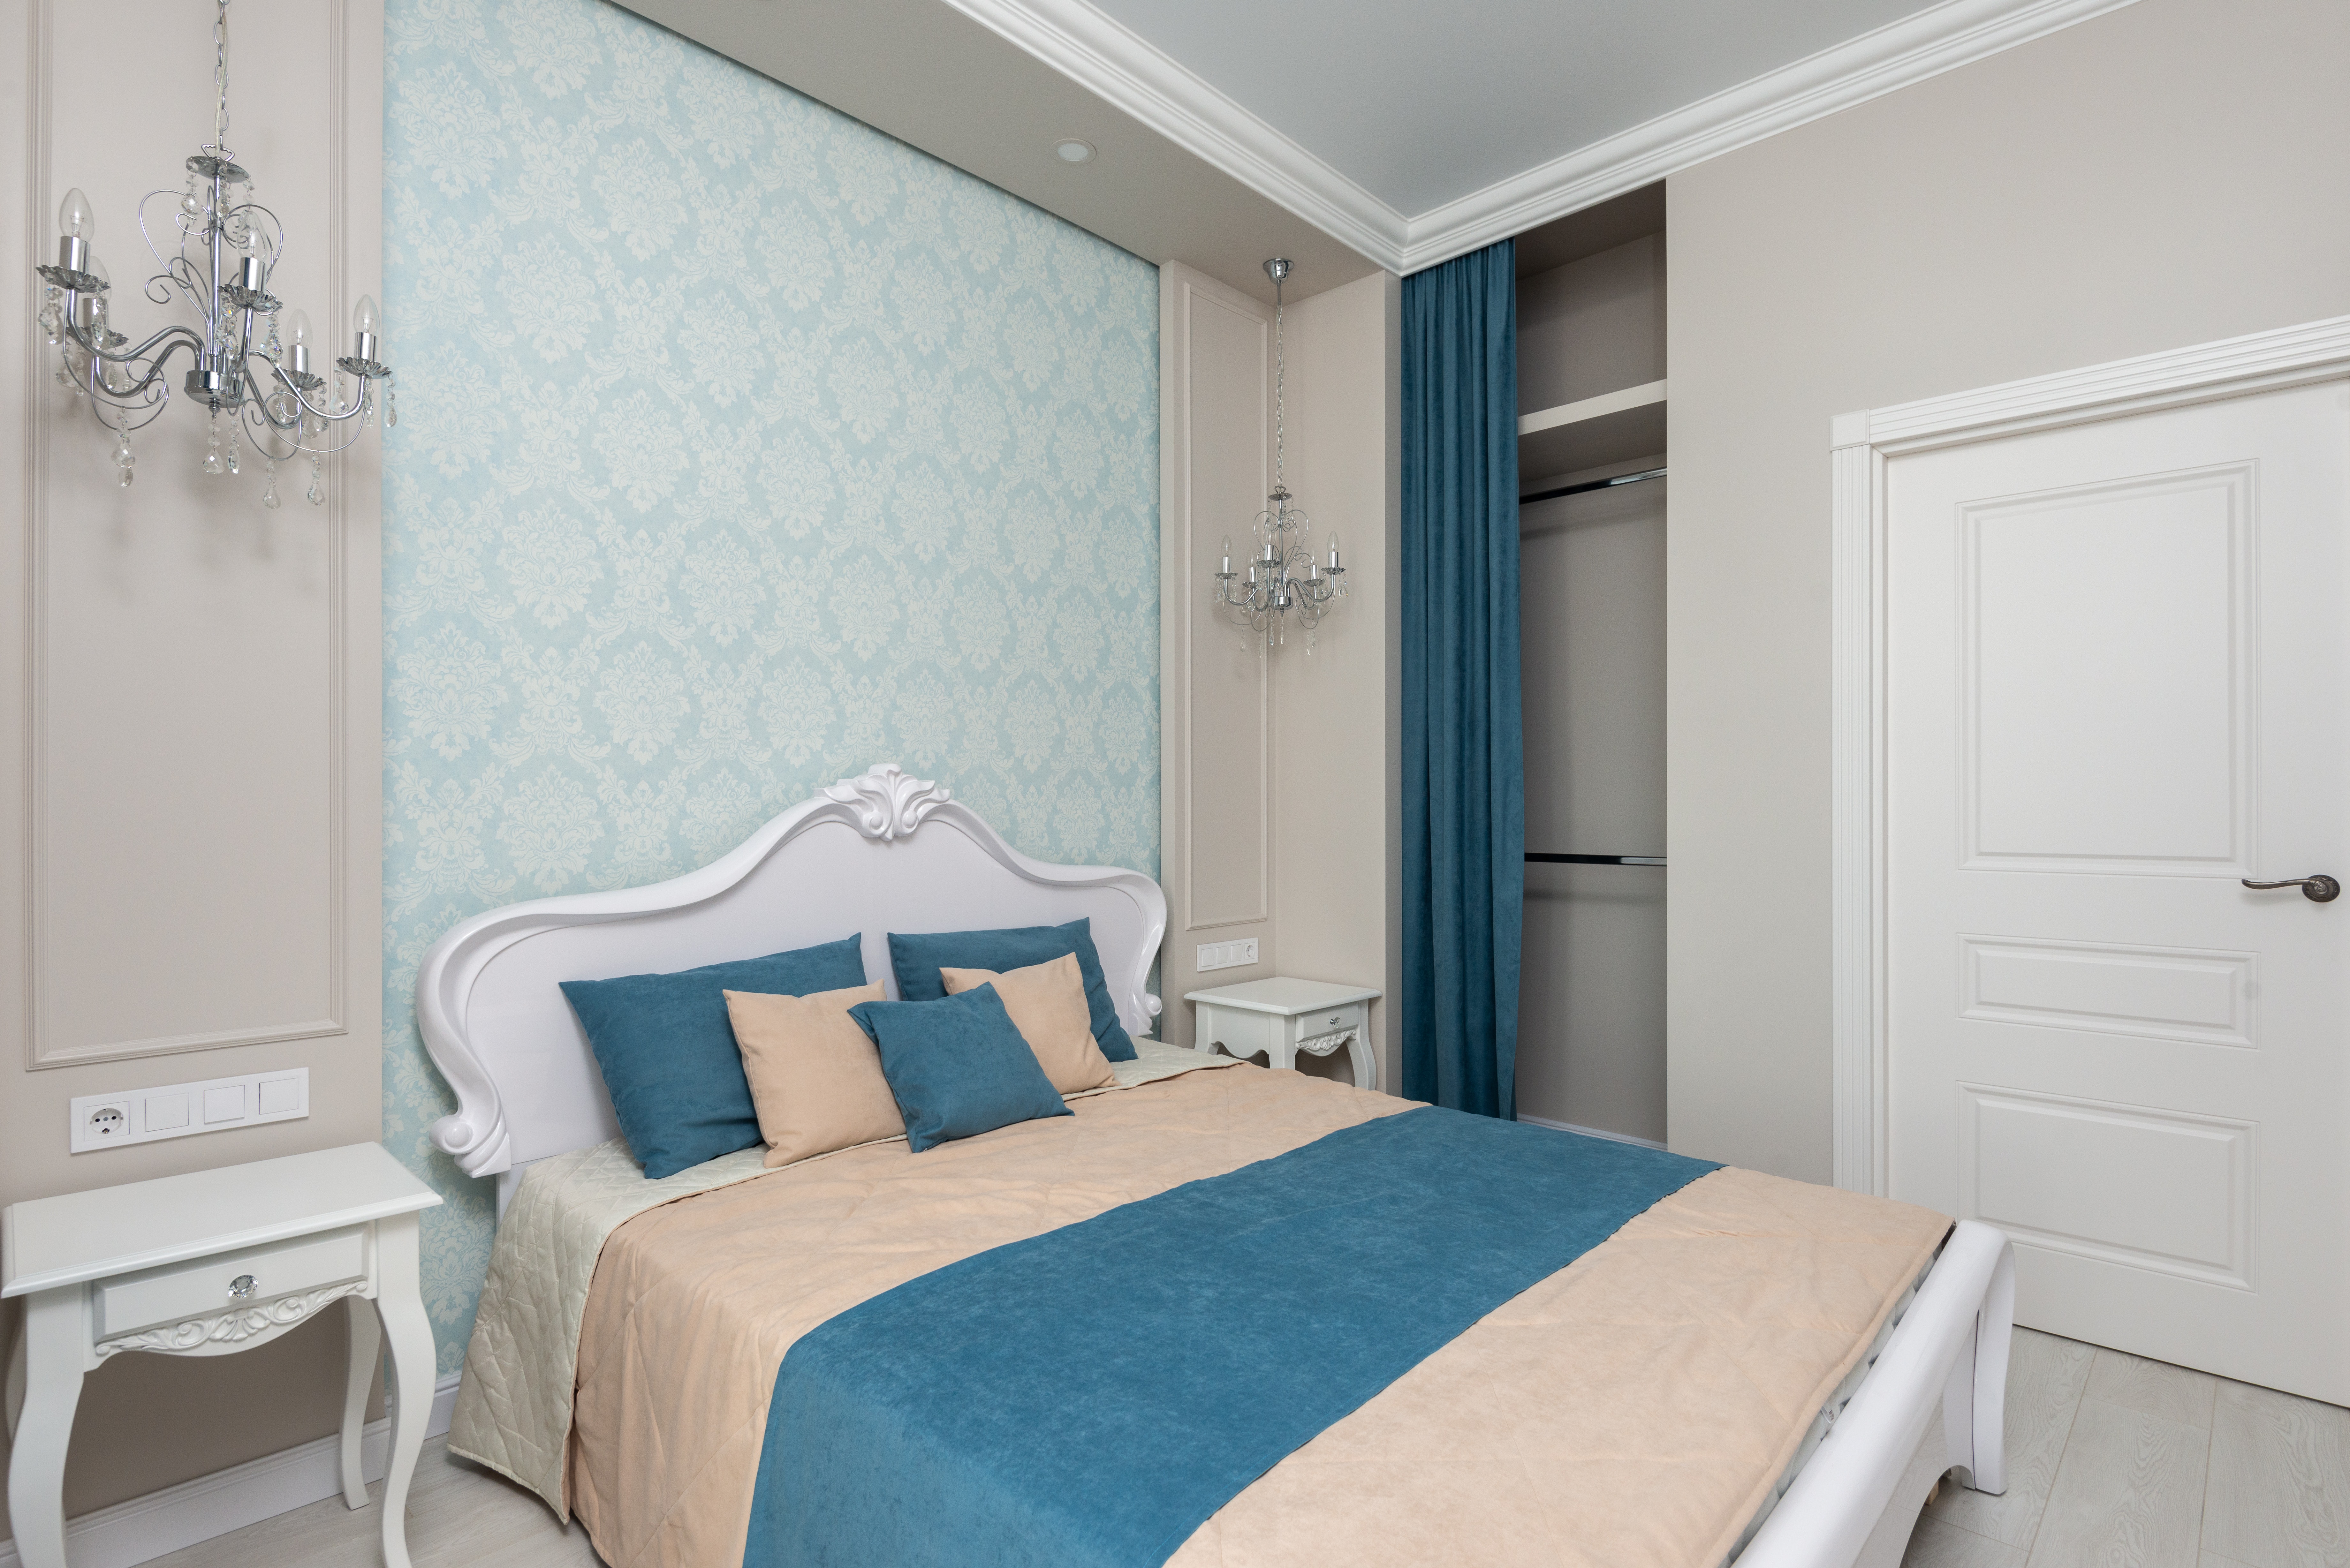 Спальня в английском стиле, пастельные сдержанные тона отлично дополняет темно-голубой плед.